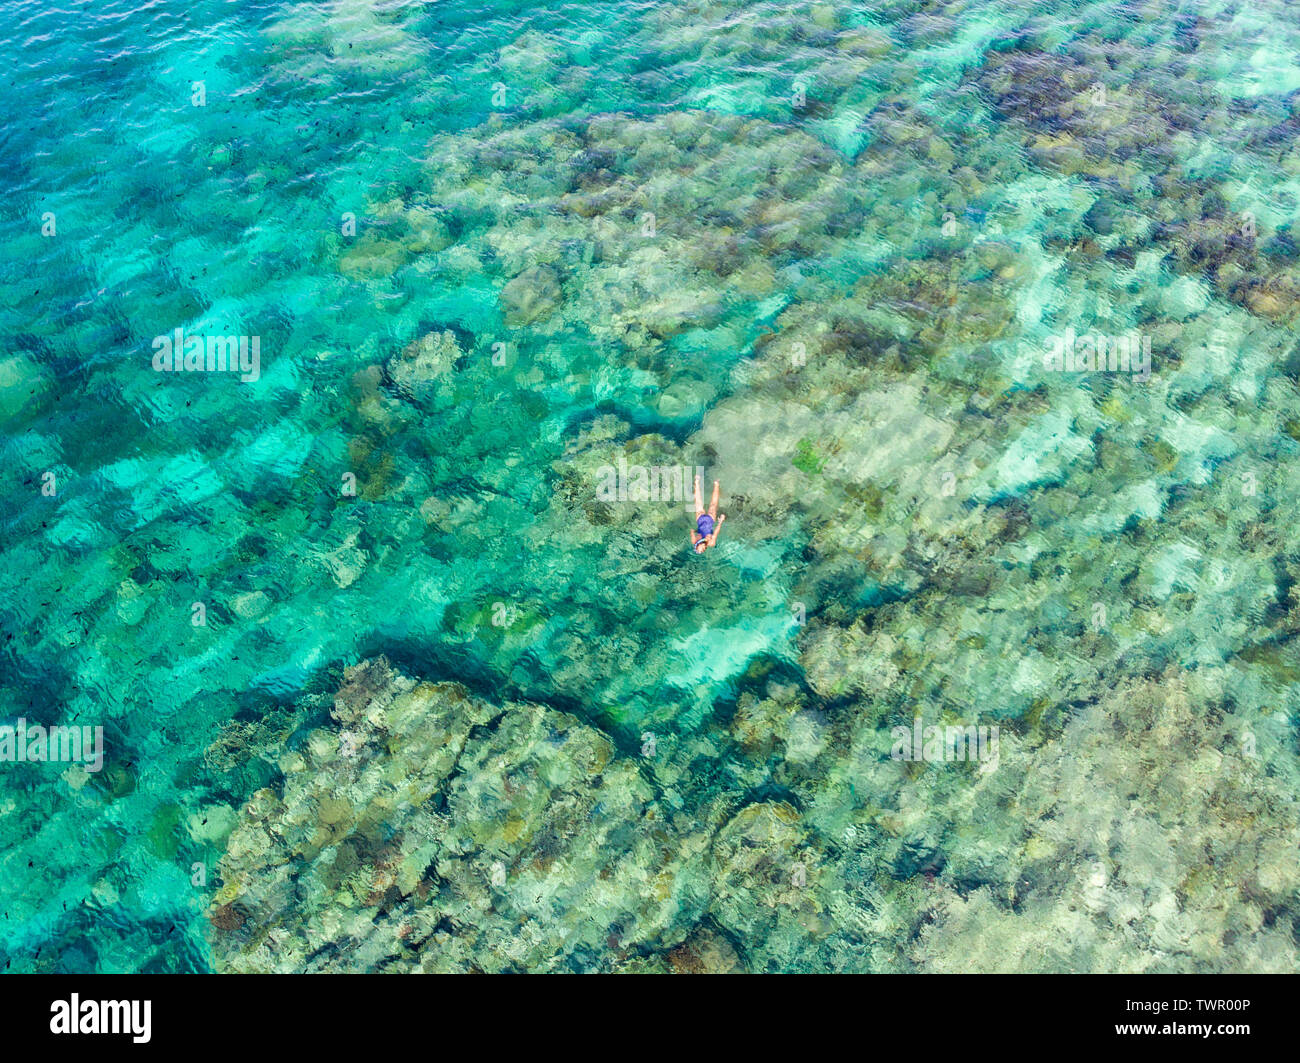 Luftbild von oben nach unten Leute Schnorcheln am Korallenriff tropische Karibik, türkisblaues Wasser. Indonesien Indonesien Molukken Inseln Banda Inseln, Stockfoto